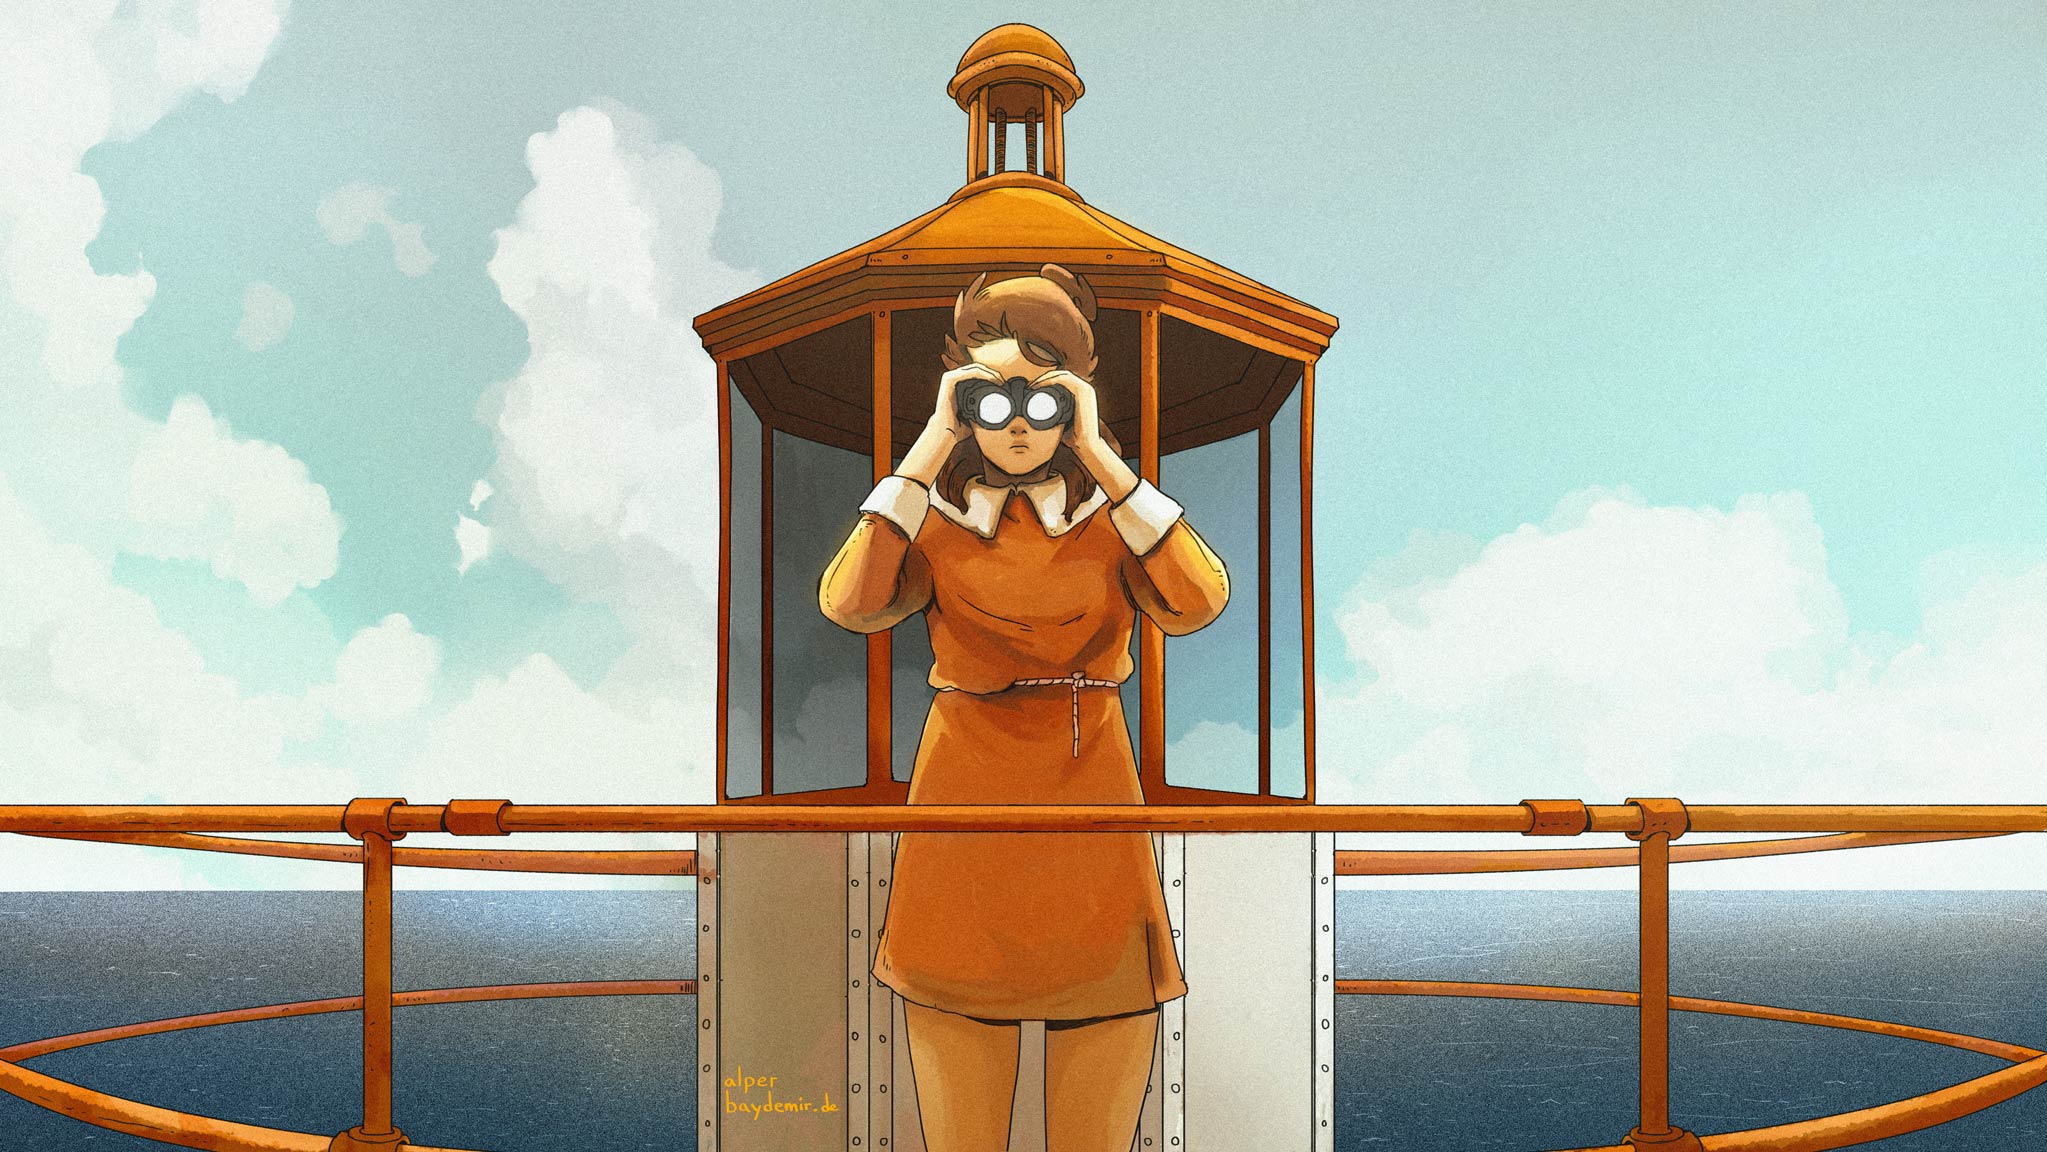 Eine Illustration von einem jungen Mädchen, welches auf einem Leuchtturm steht und durch ein Fernglas auf den Ozean blickt